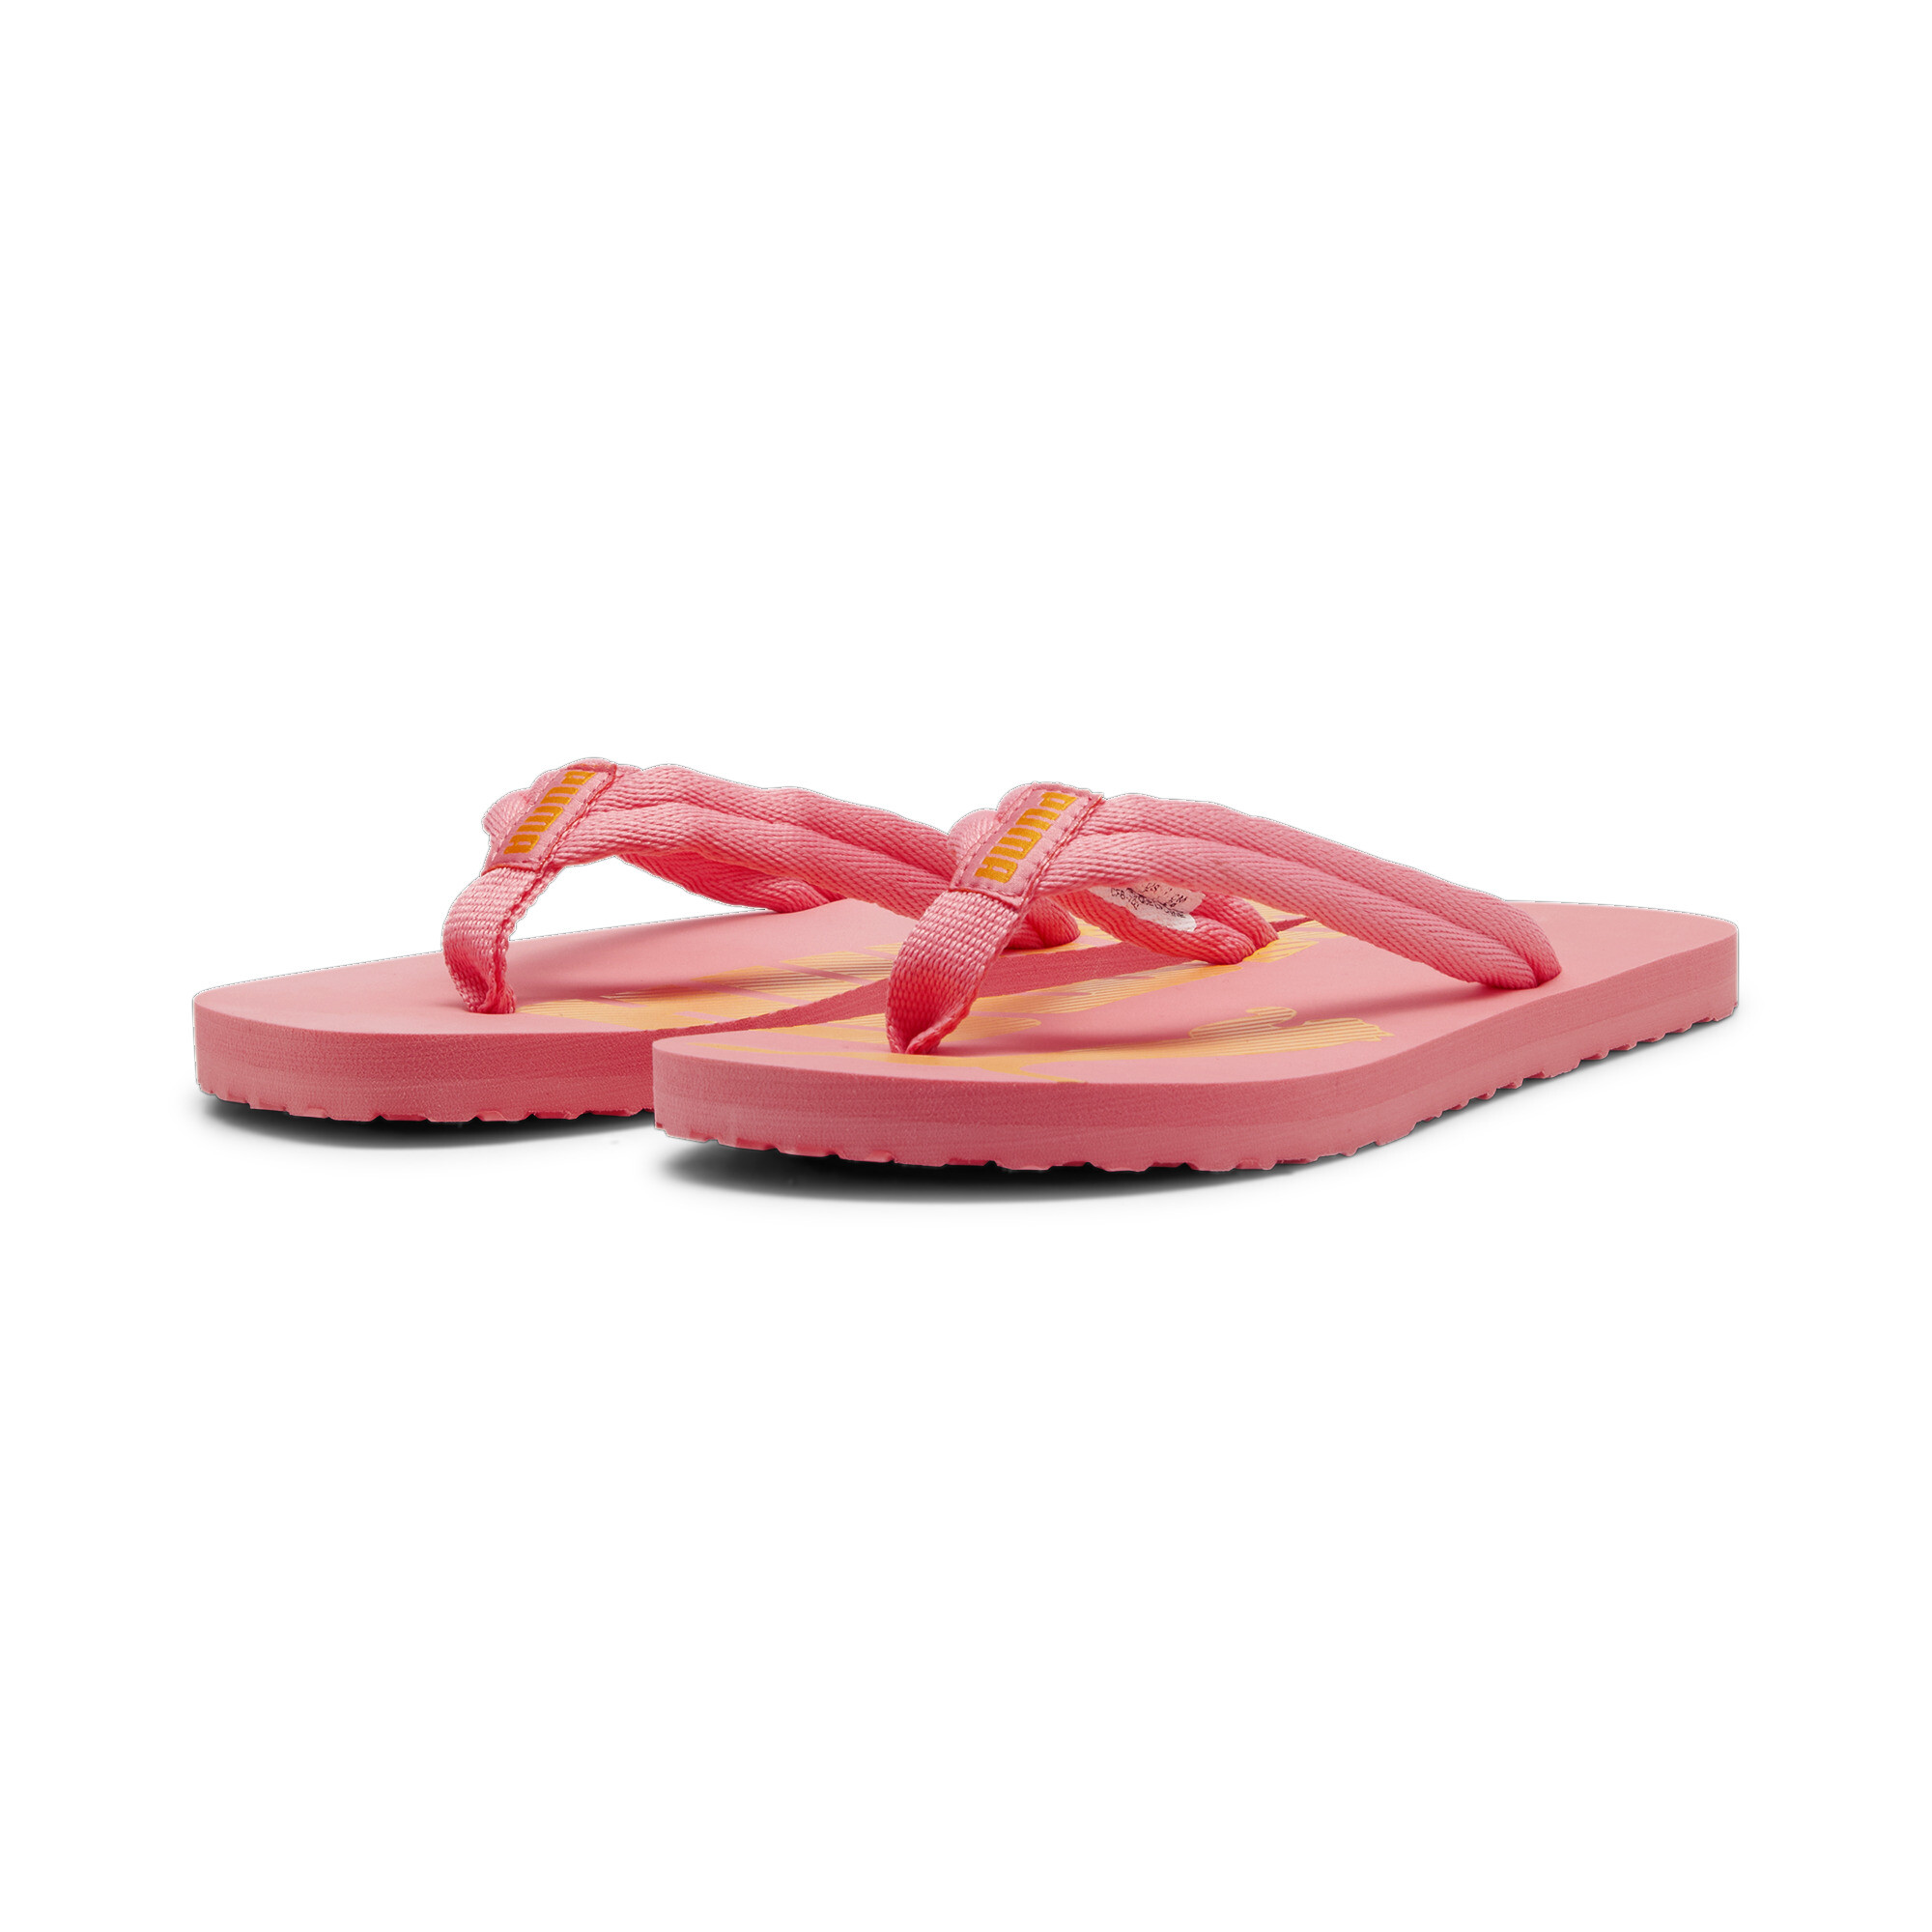 Men's PUMA Epic Flip V2 Sandals In Pink, Size EU 37